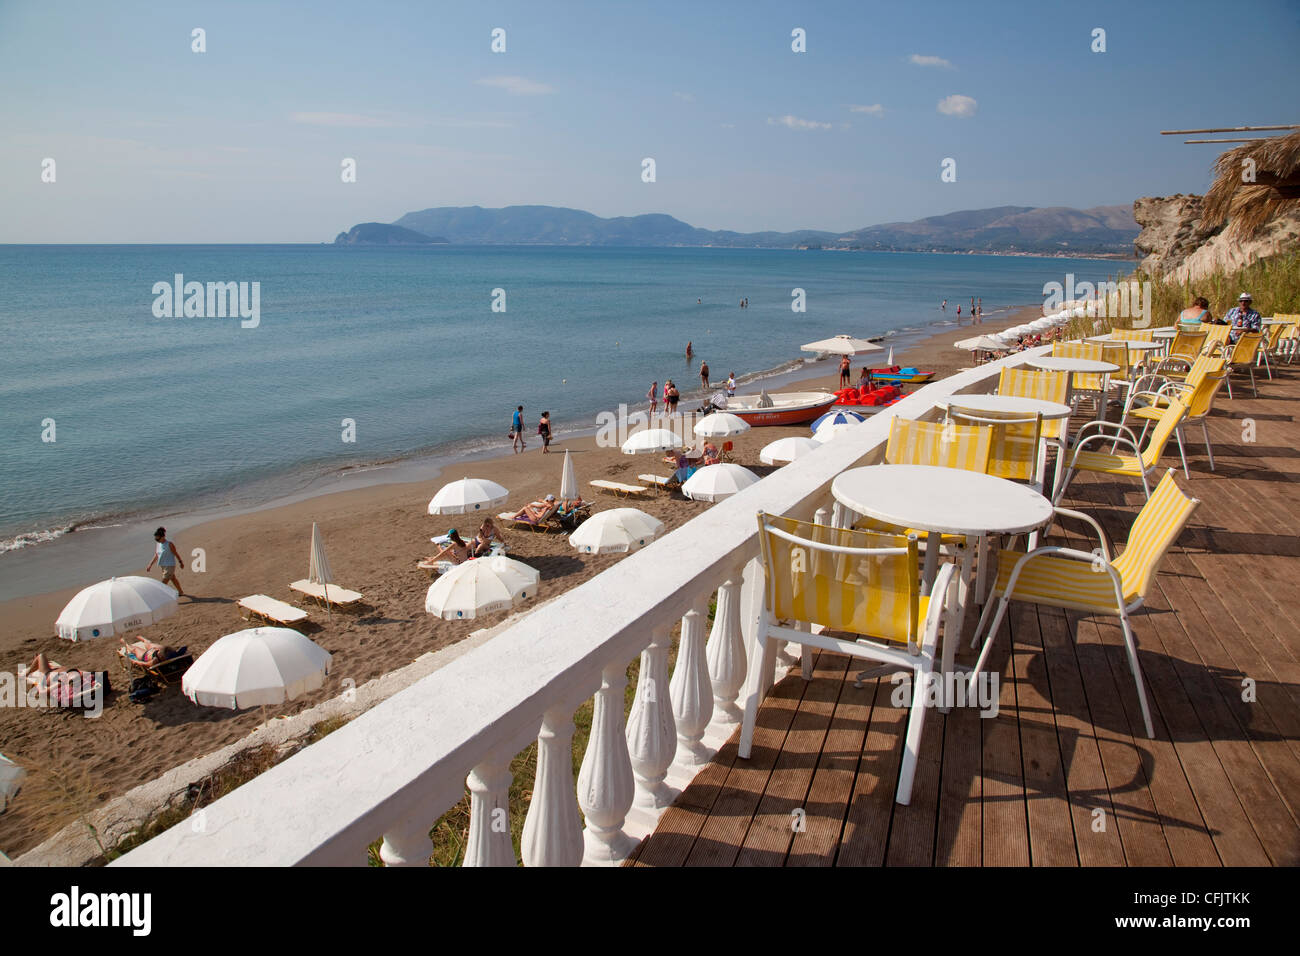 Cafe donnant sur plage, Kalamaki, Zante, îles Ioniennes, îles grecques, Grèce, Europe Banque D'Images